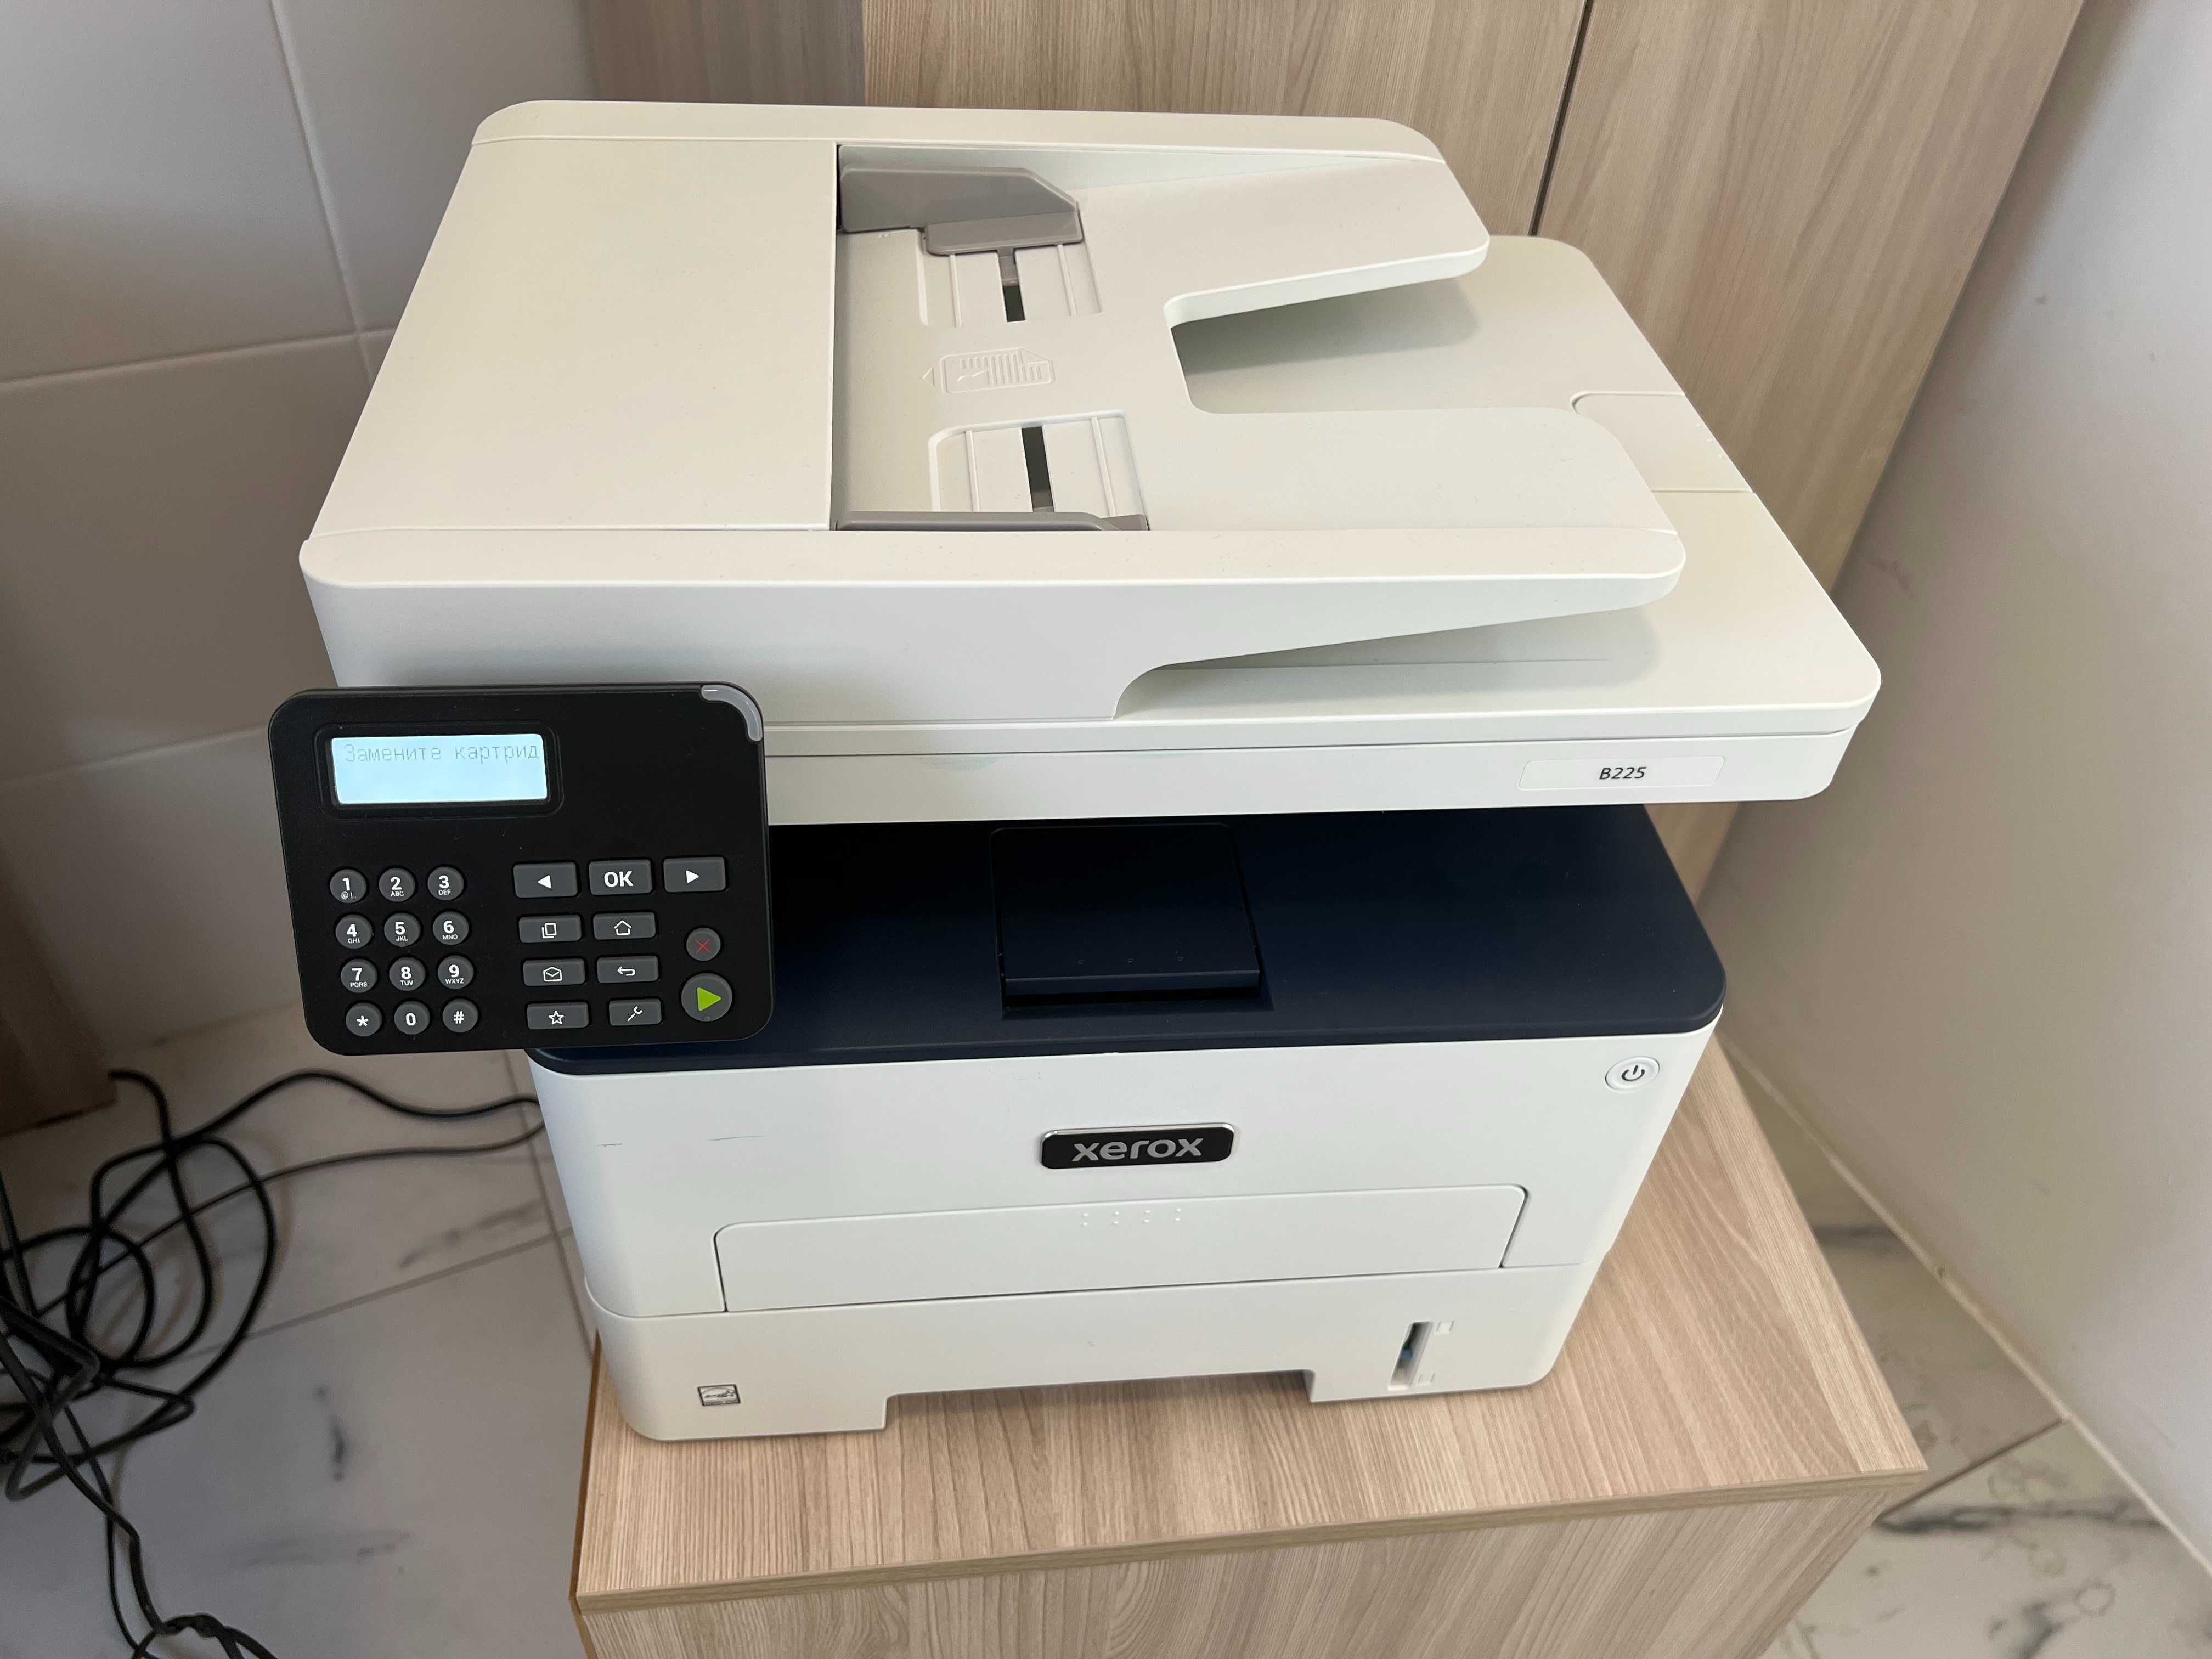 МФУ принтер+сканер Xerox B225